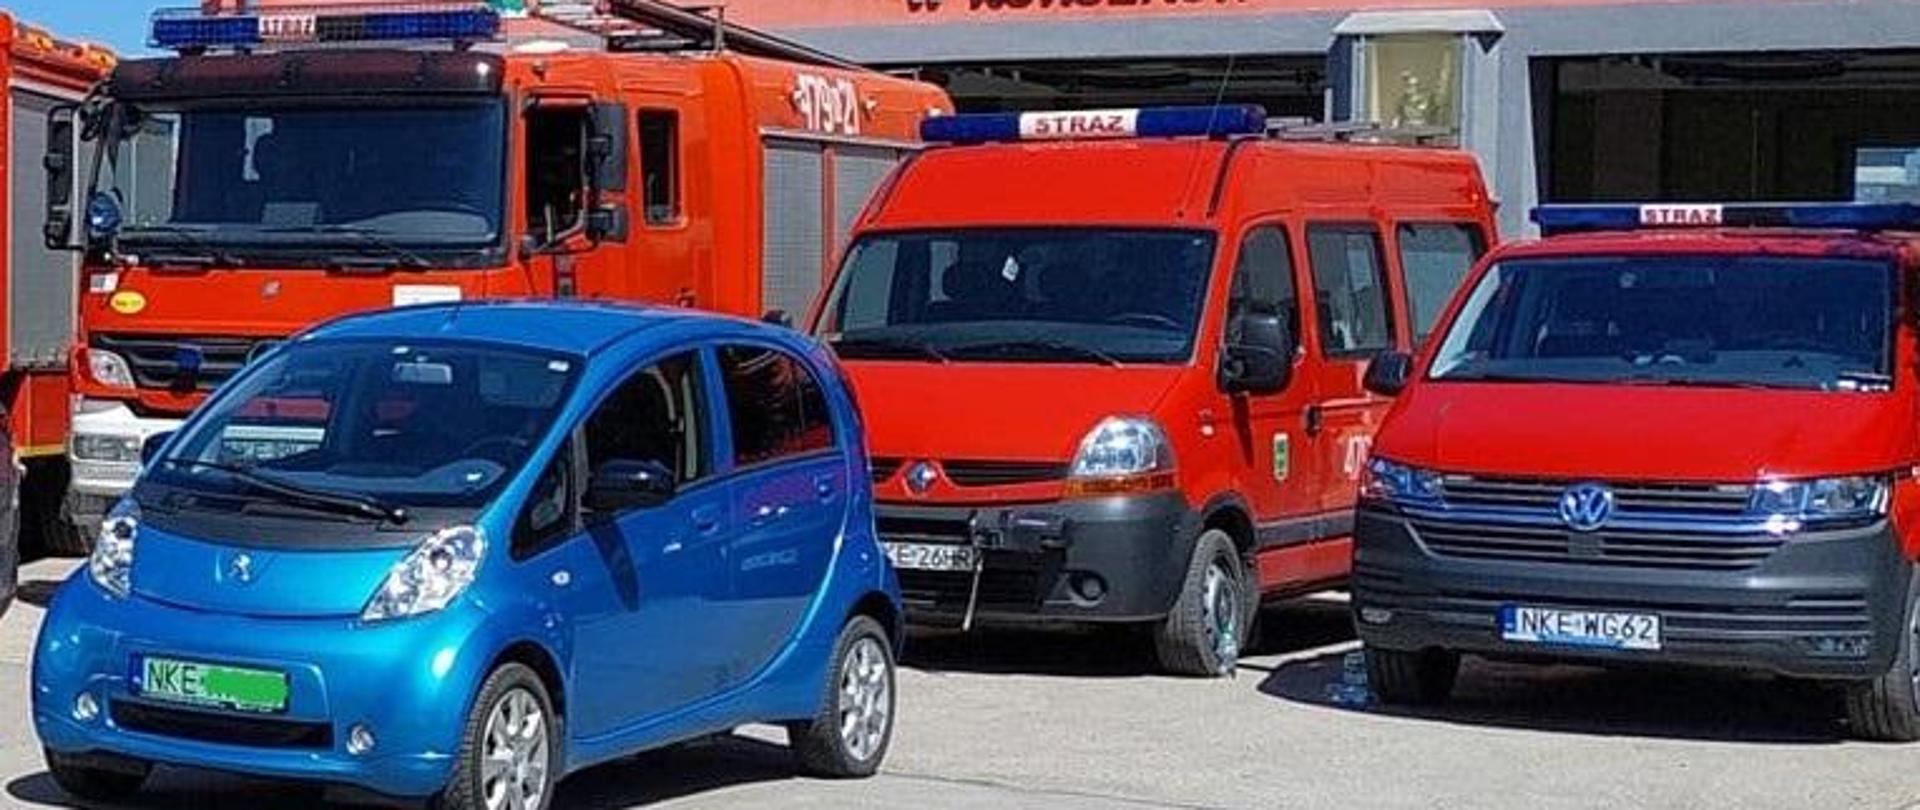 Na zdjęciu widać pojazd osobowy, niebieski i pojazdy straży pożarnej czerwone. W tle budynek remizy.